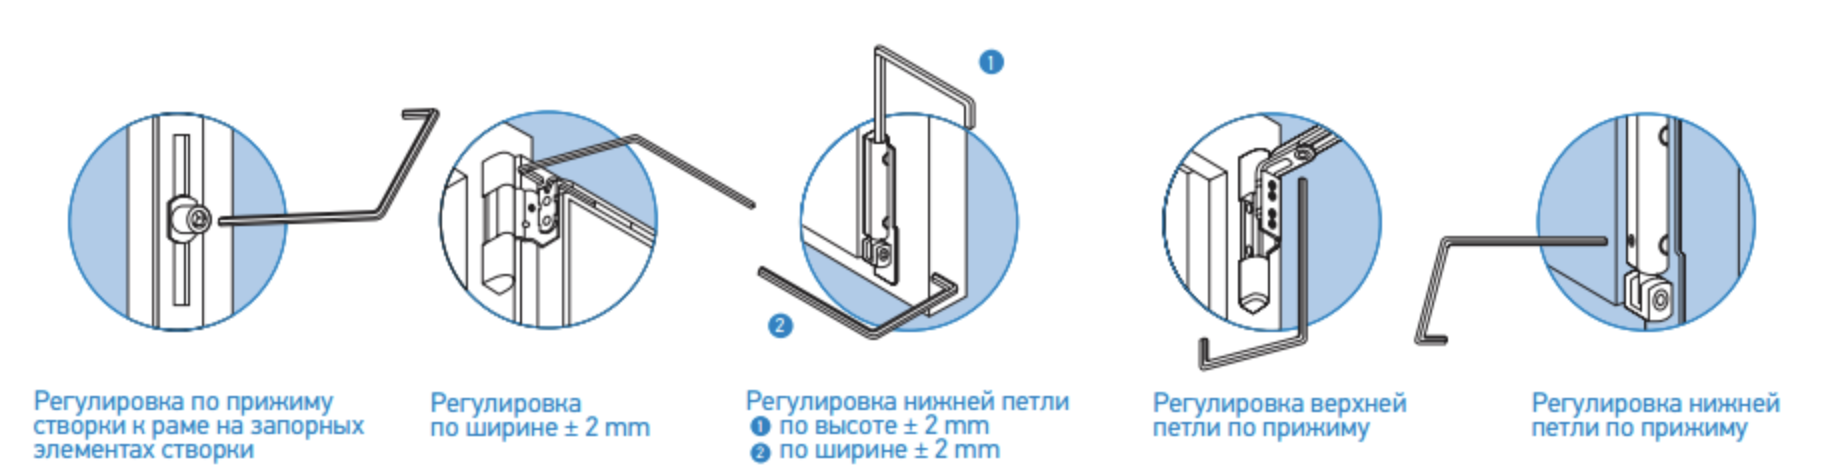 Самостоятельная регулировка пластиковых окон: пошаговая инструкция с фото и видео